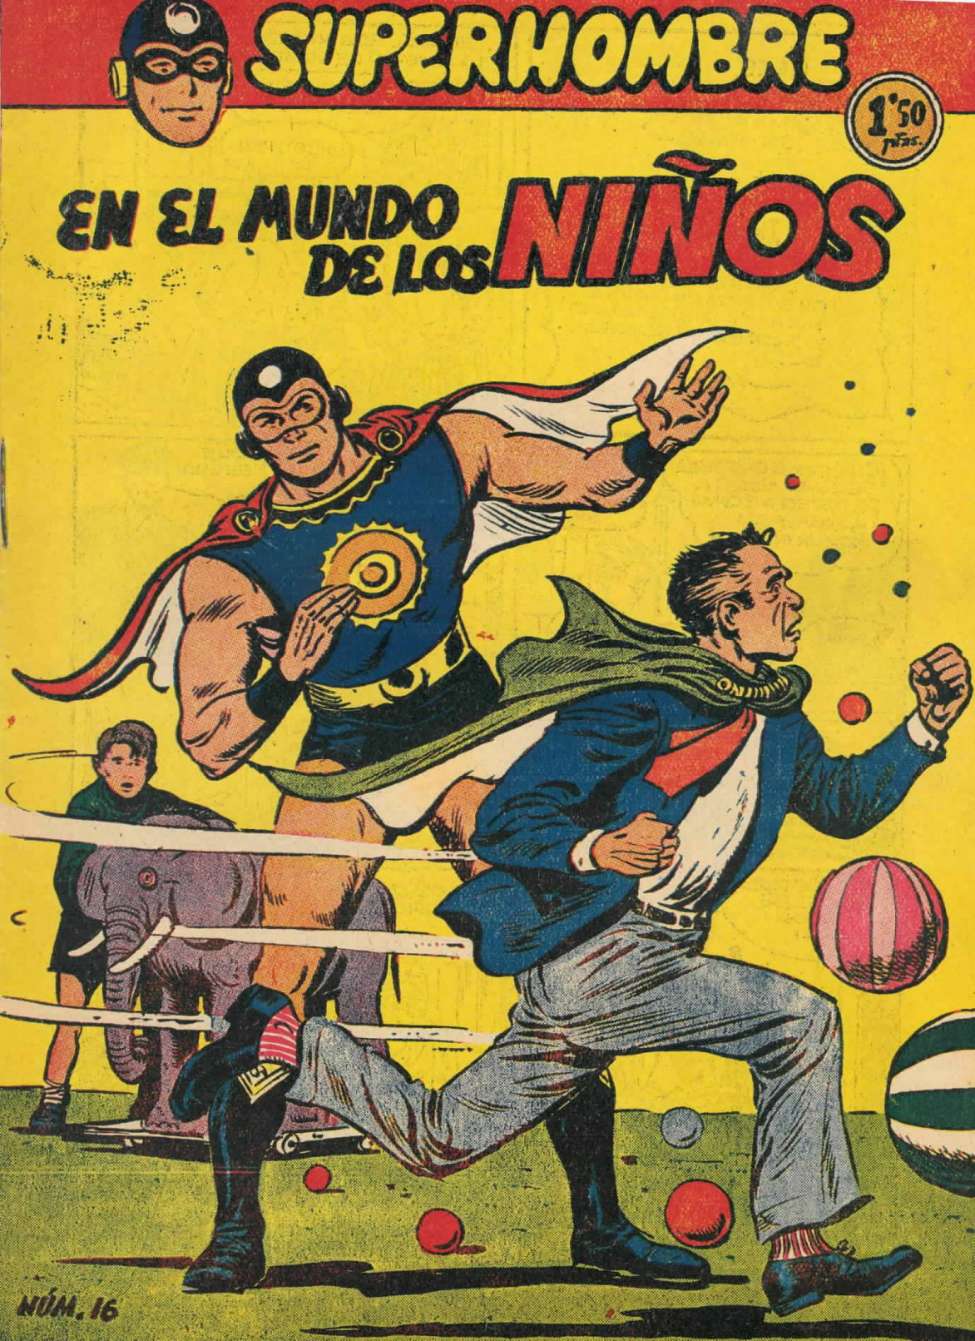 Comic Book Cover For SuperHombre 16 En el mundo de los ninos